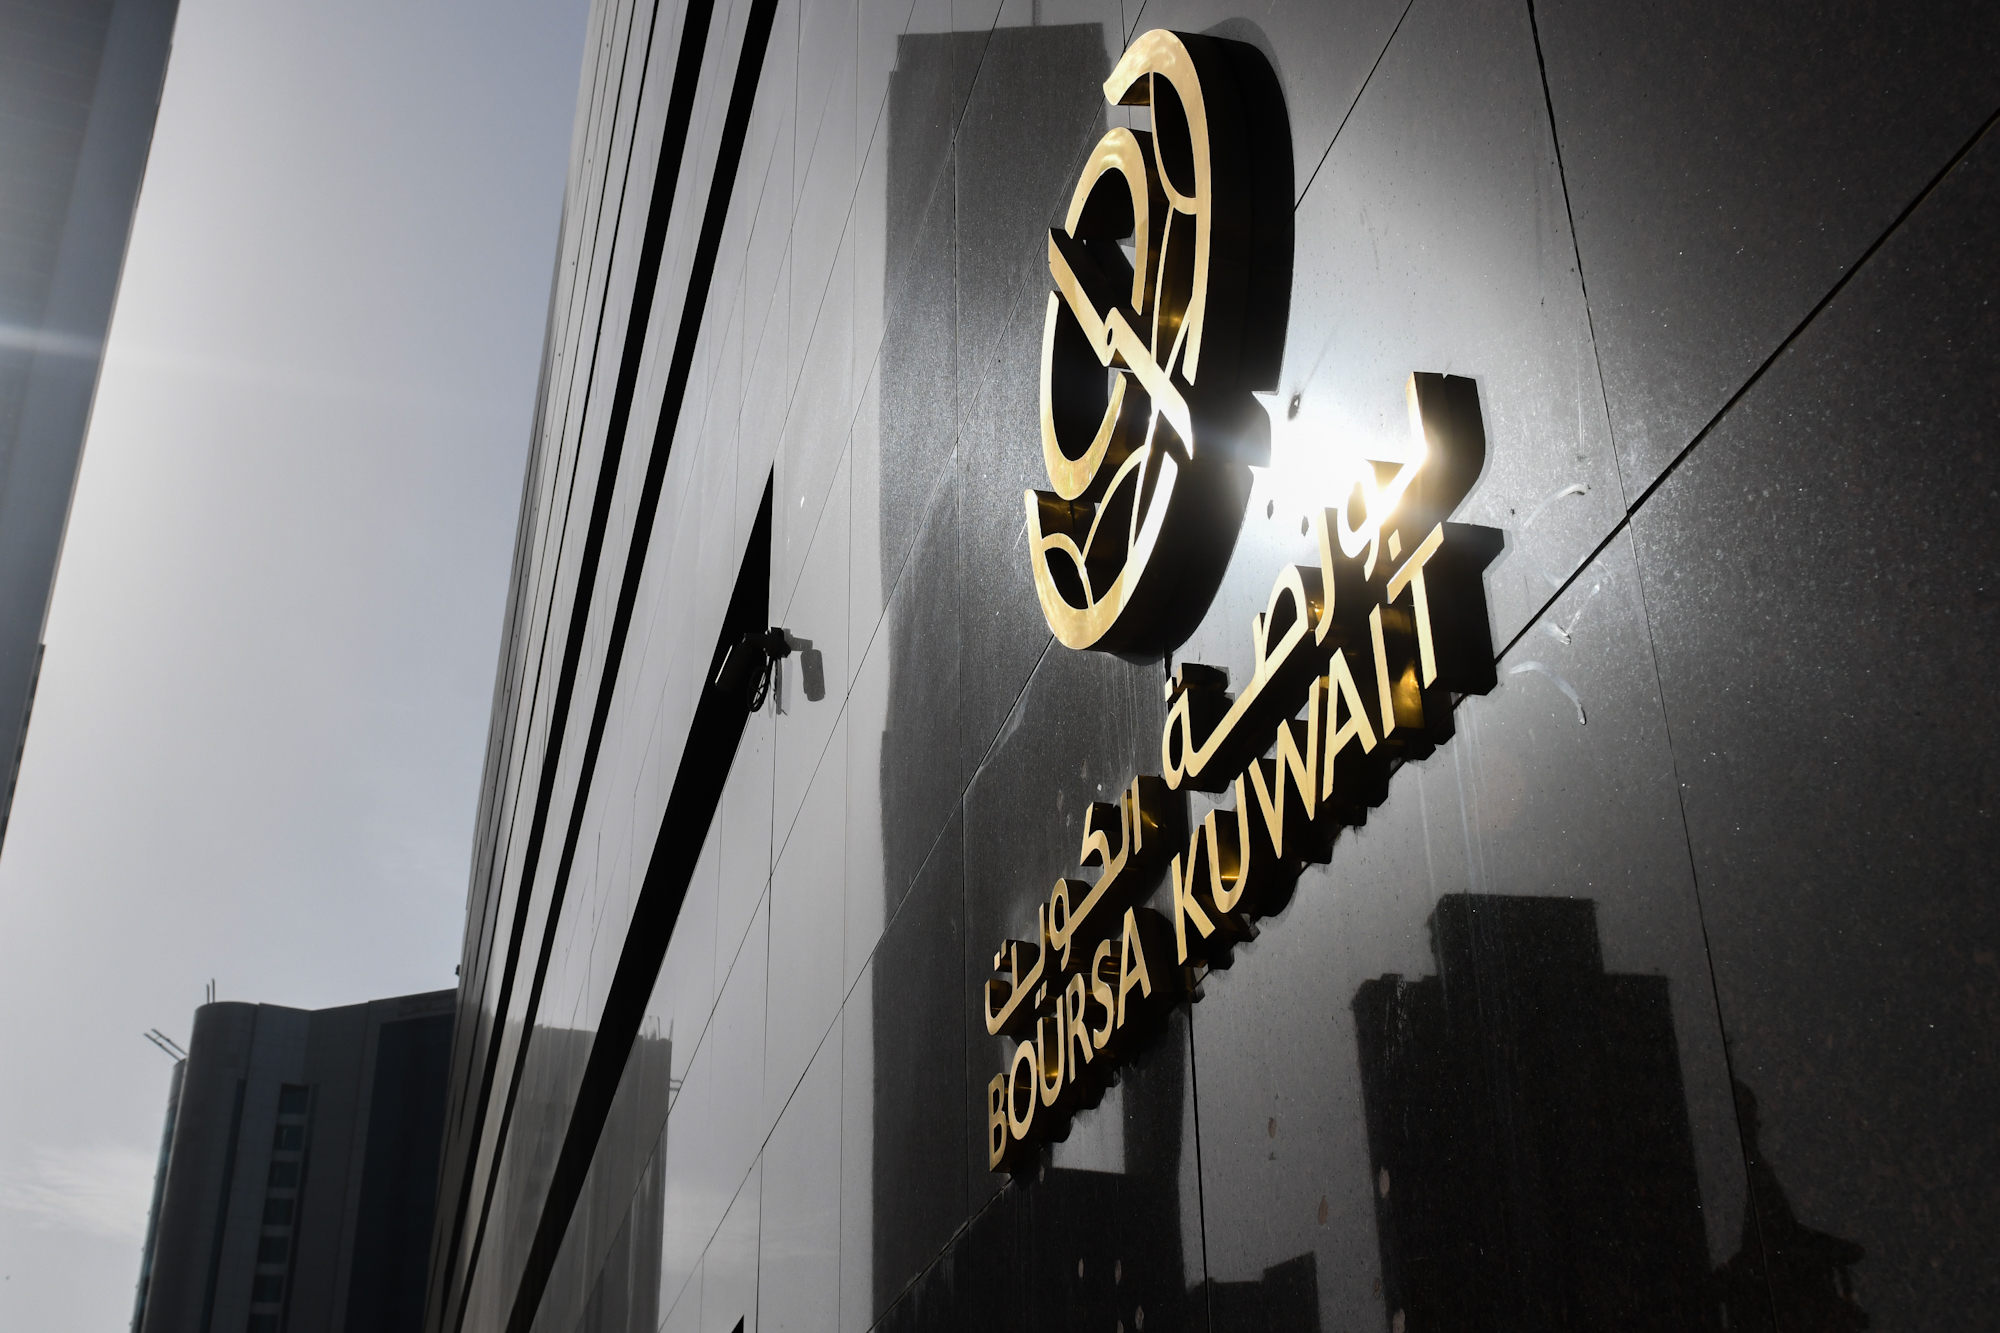 بورصة الكويت تغلق تعاملاتها على انخفاض مؤشرها العام 9ر43 نقطة ليبلغ 49ر7600 بنسبة 57ر0 في المئة                                                                                                                                                           